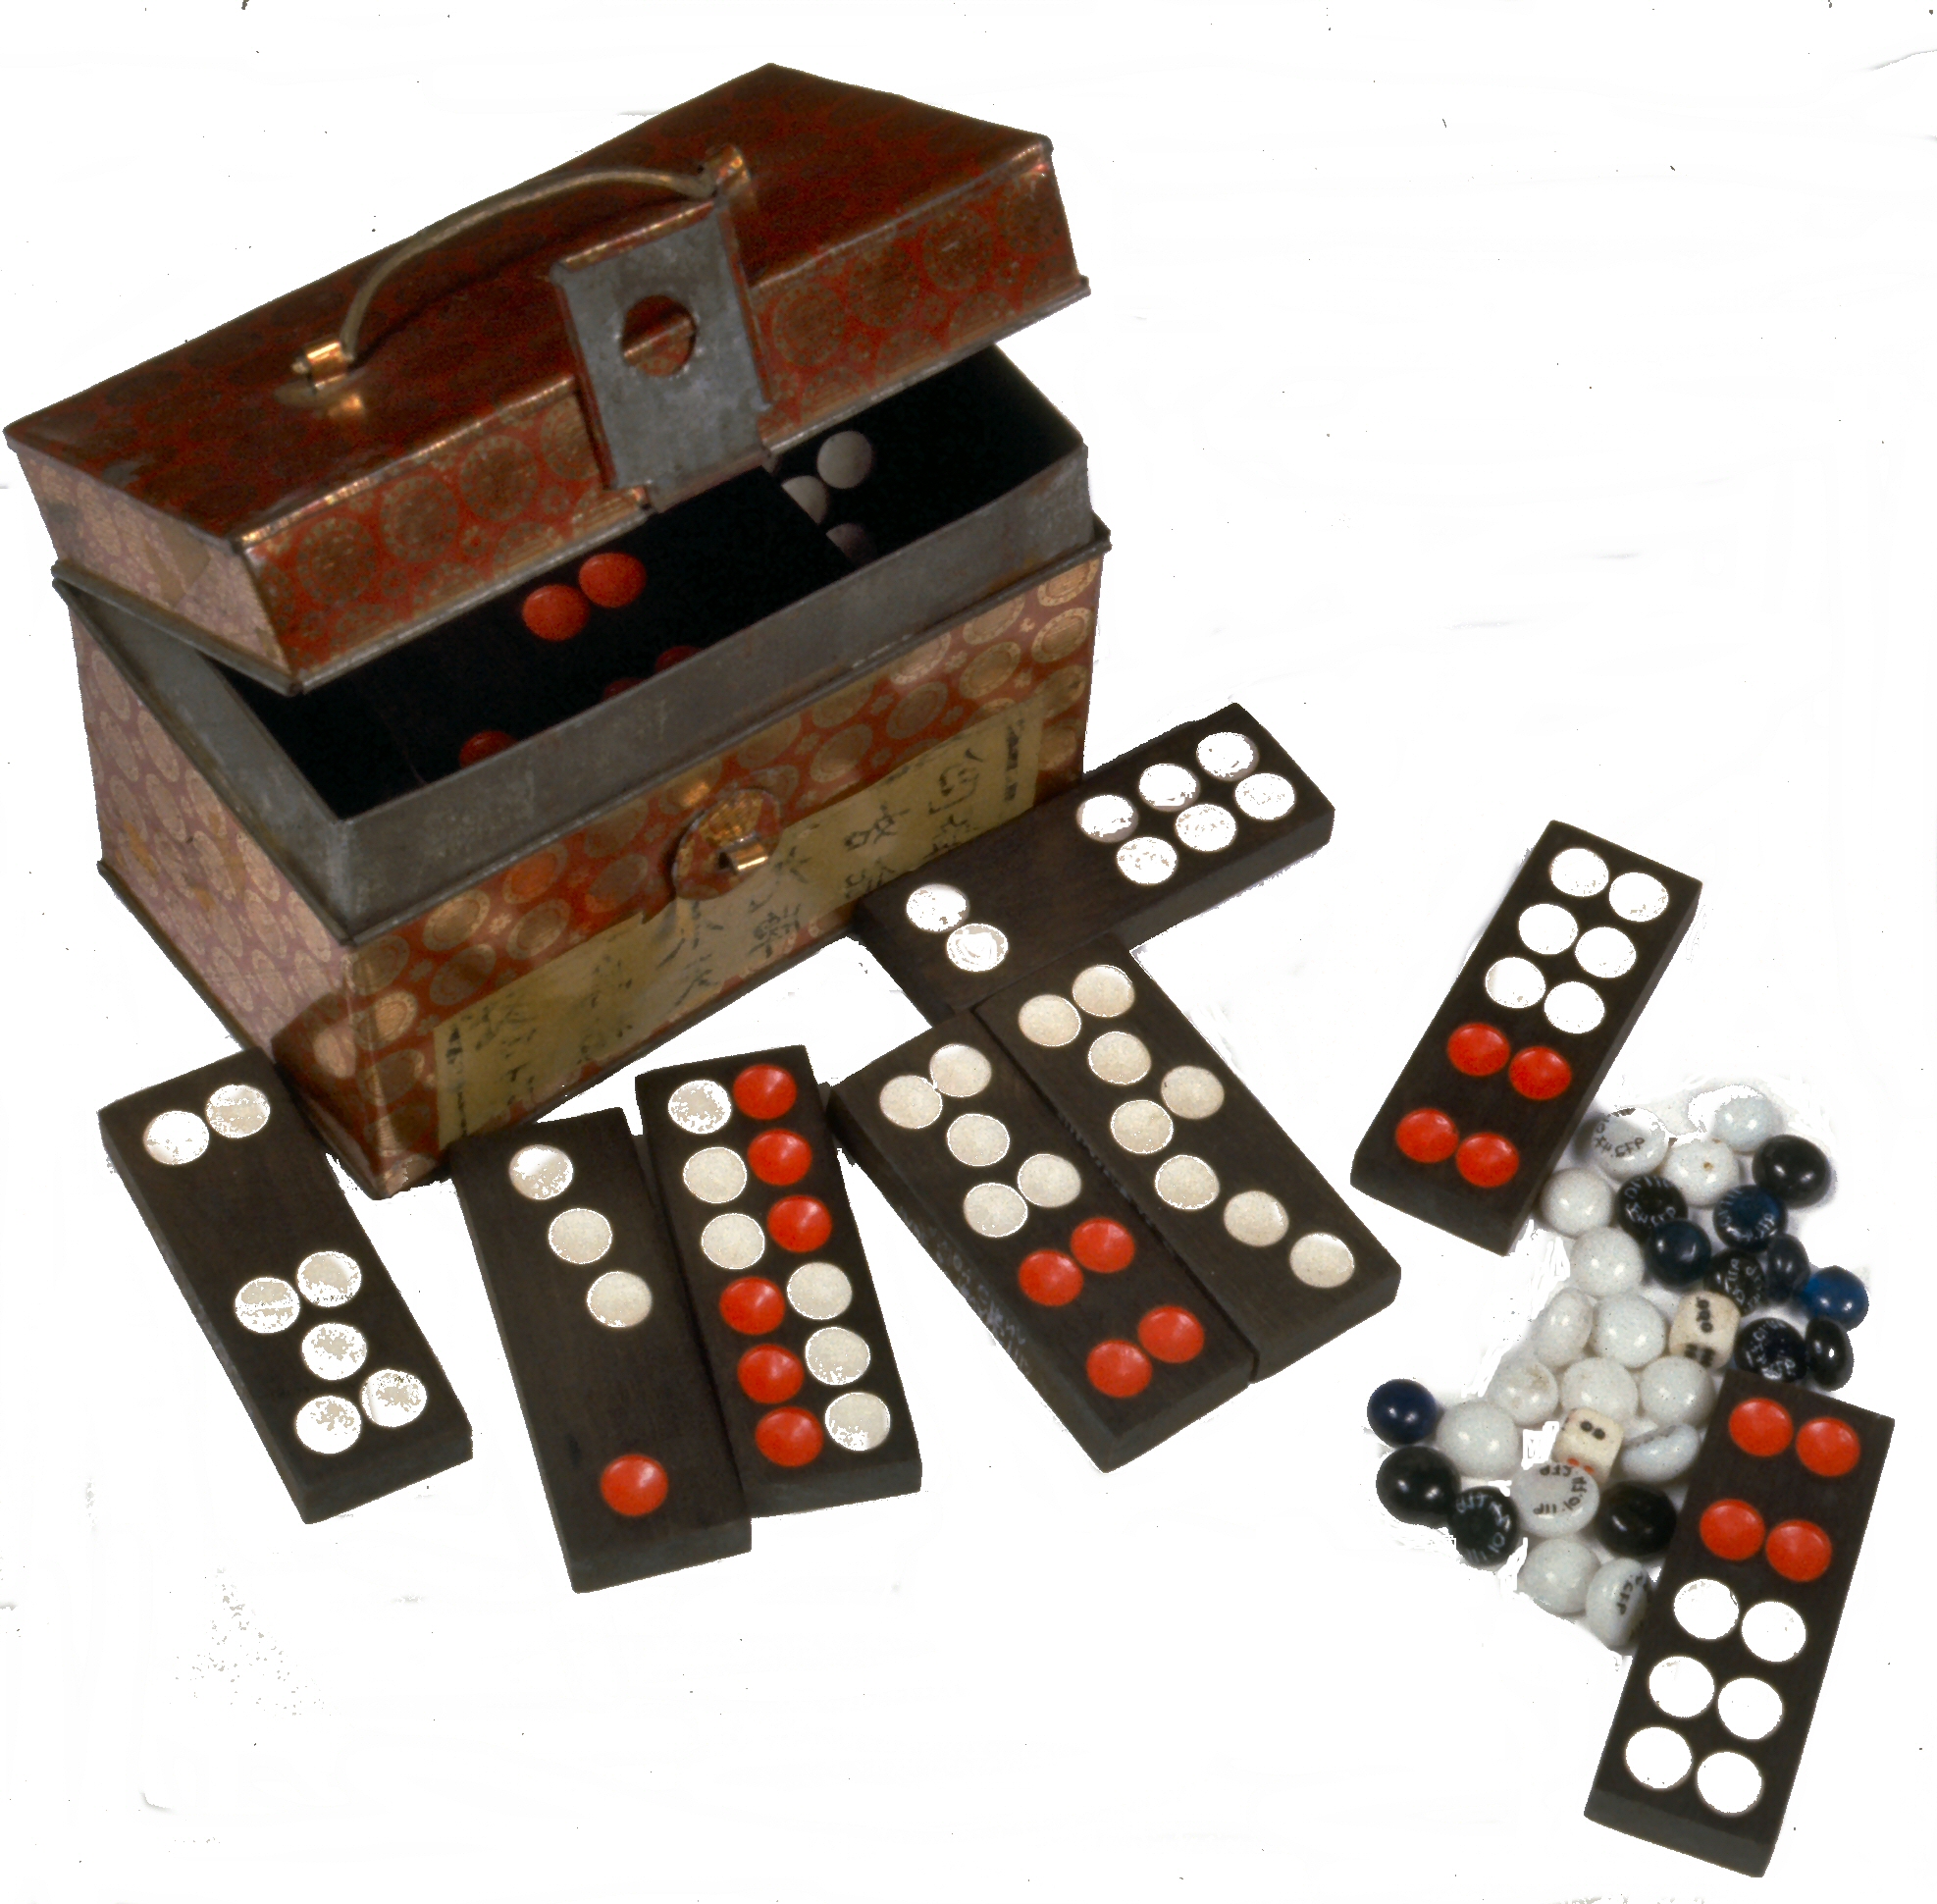 Chinese dominoe set